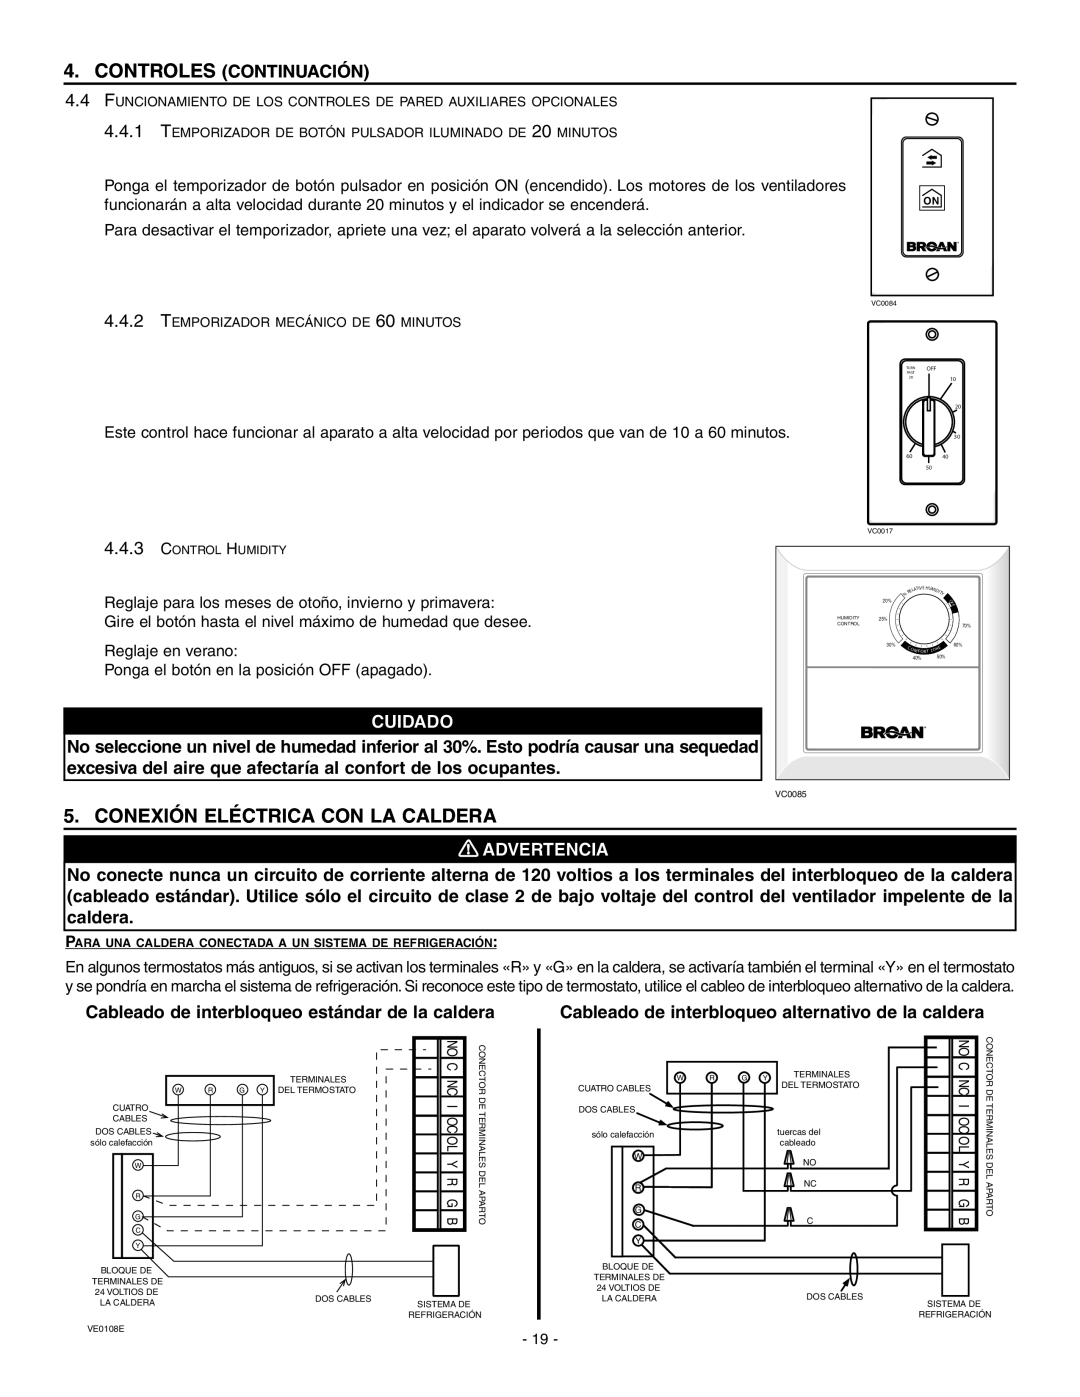 Broan HRV90HT, ERV90HCT Conexión Eléctrica Con La Caldera, Controles Continuación, Cuidado, Advertencia 